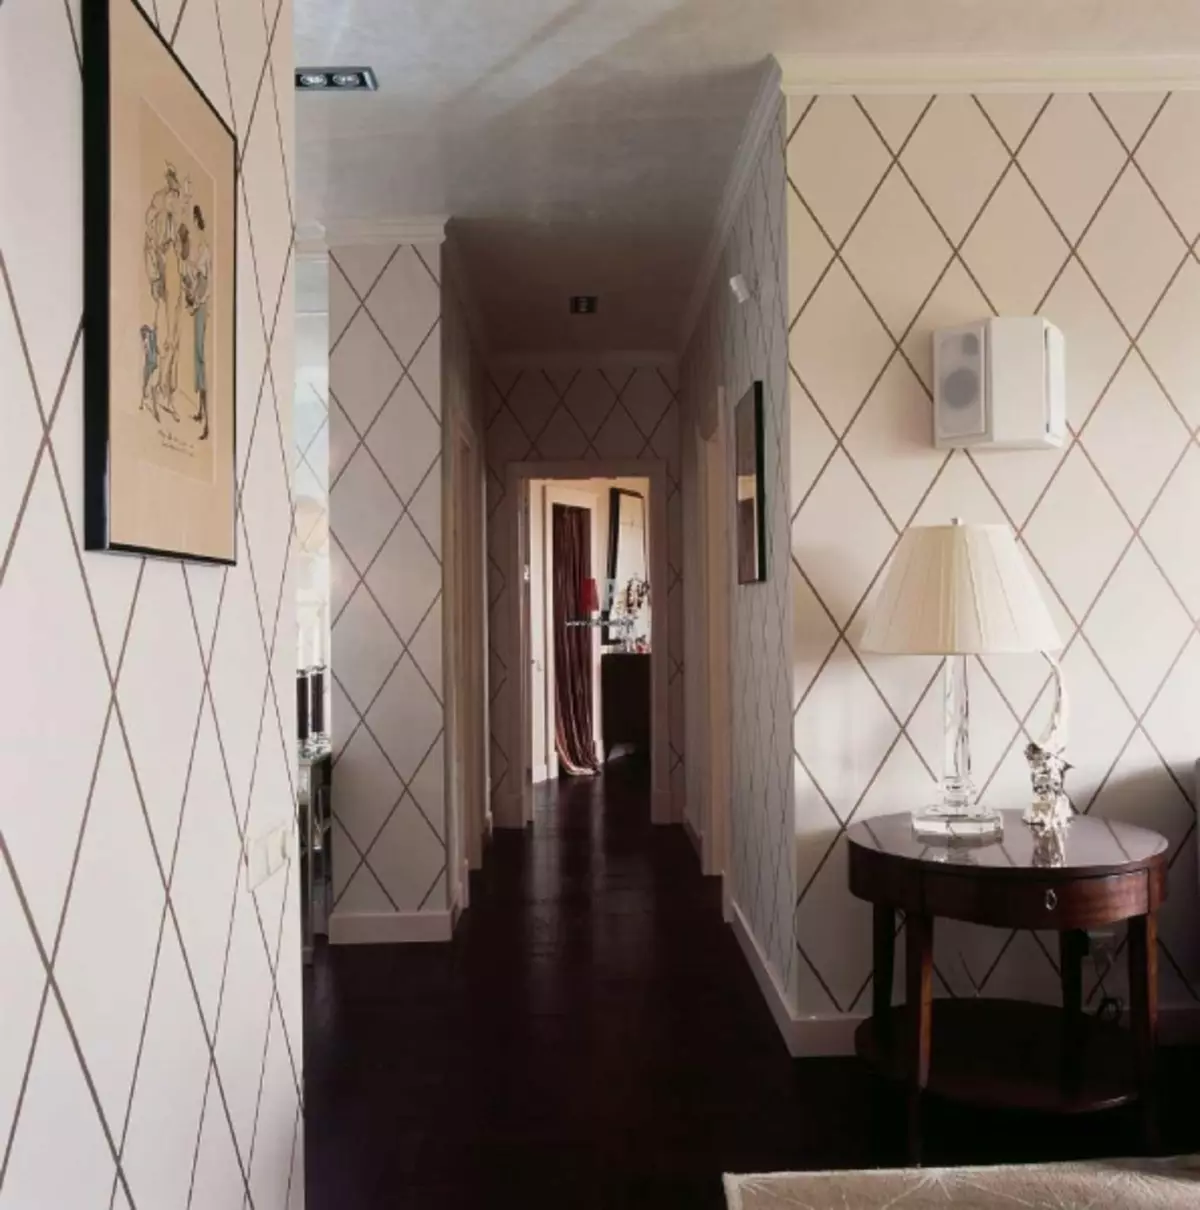 Fondos de pantalla no corredor do apartamento Foto 2019: Para o corredor, deseño, ideas modernas de interiores, de moda, que ir, opcións, líquido en pequeno, vídeo